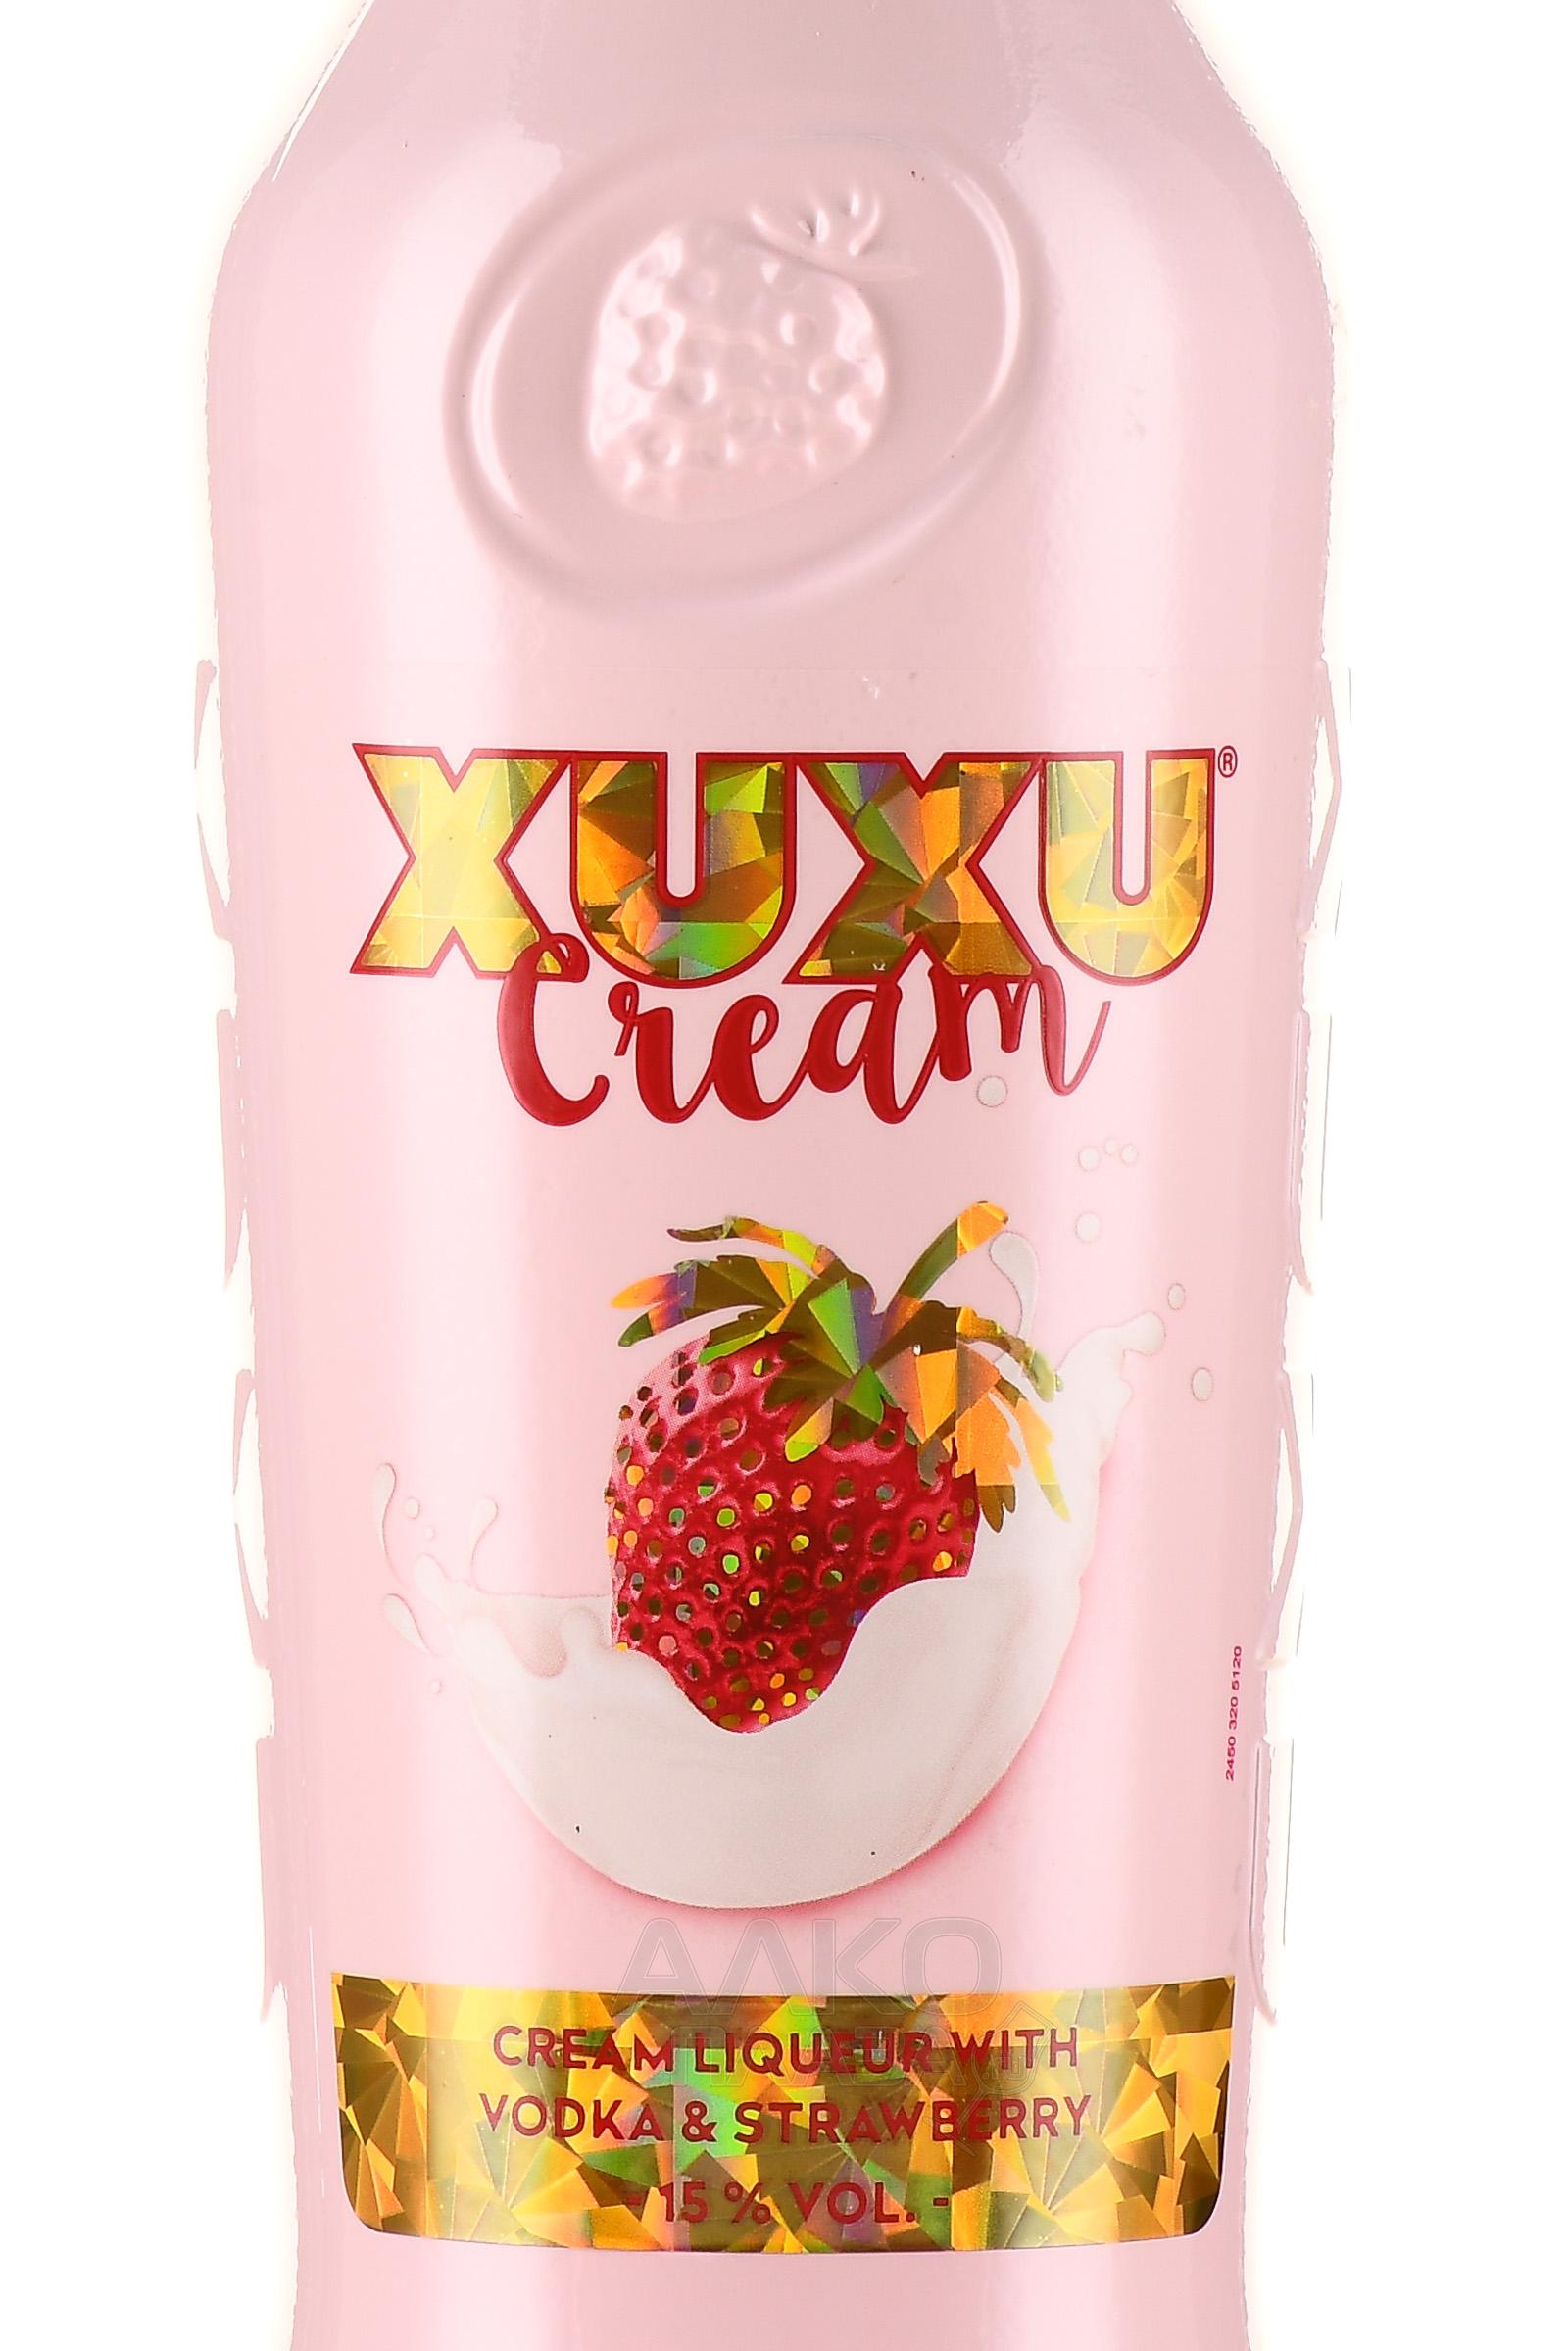 XUXU Cream Крем - ликер - 0.7 л купить цена эмульсионный Ксу-Ксу